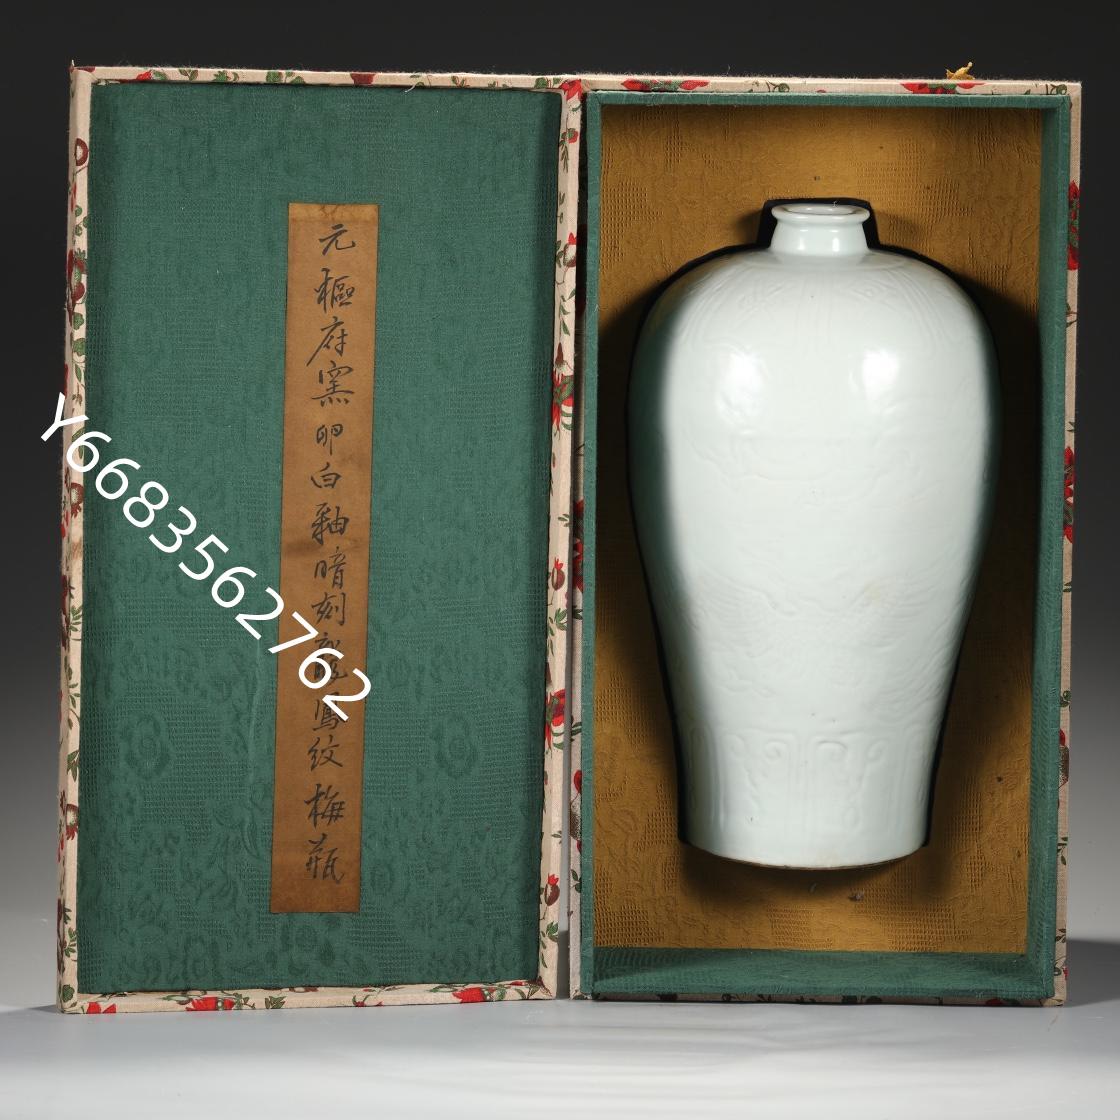 舊藏元代樞府窯卵白釉暗刻龍鳳紋大梅瓶尺寸高37.5公分肚徑20公分口徑5 